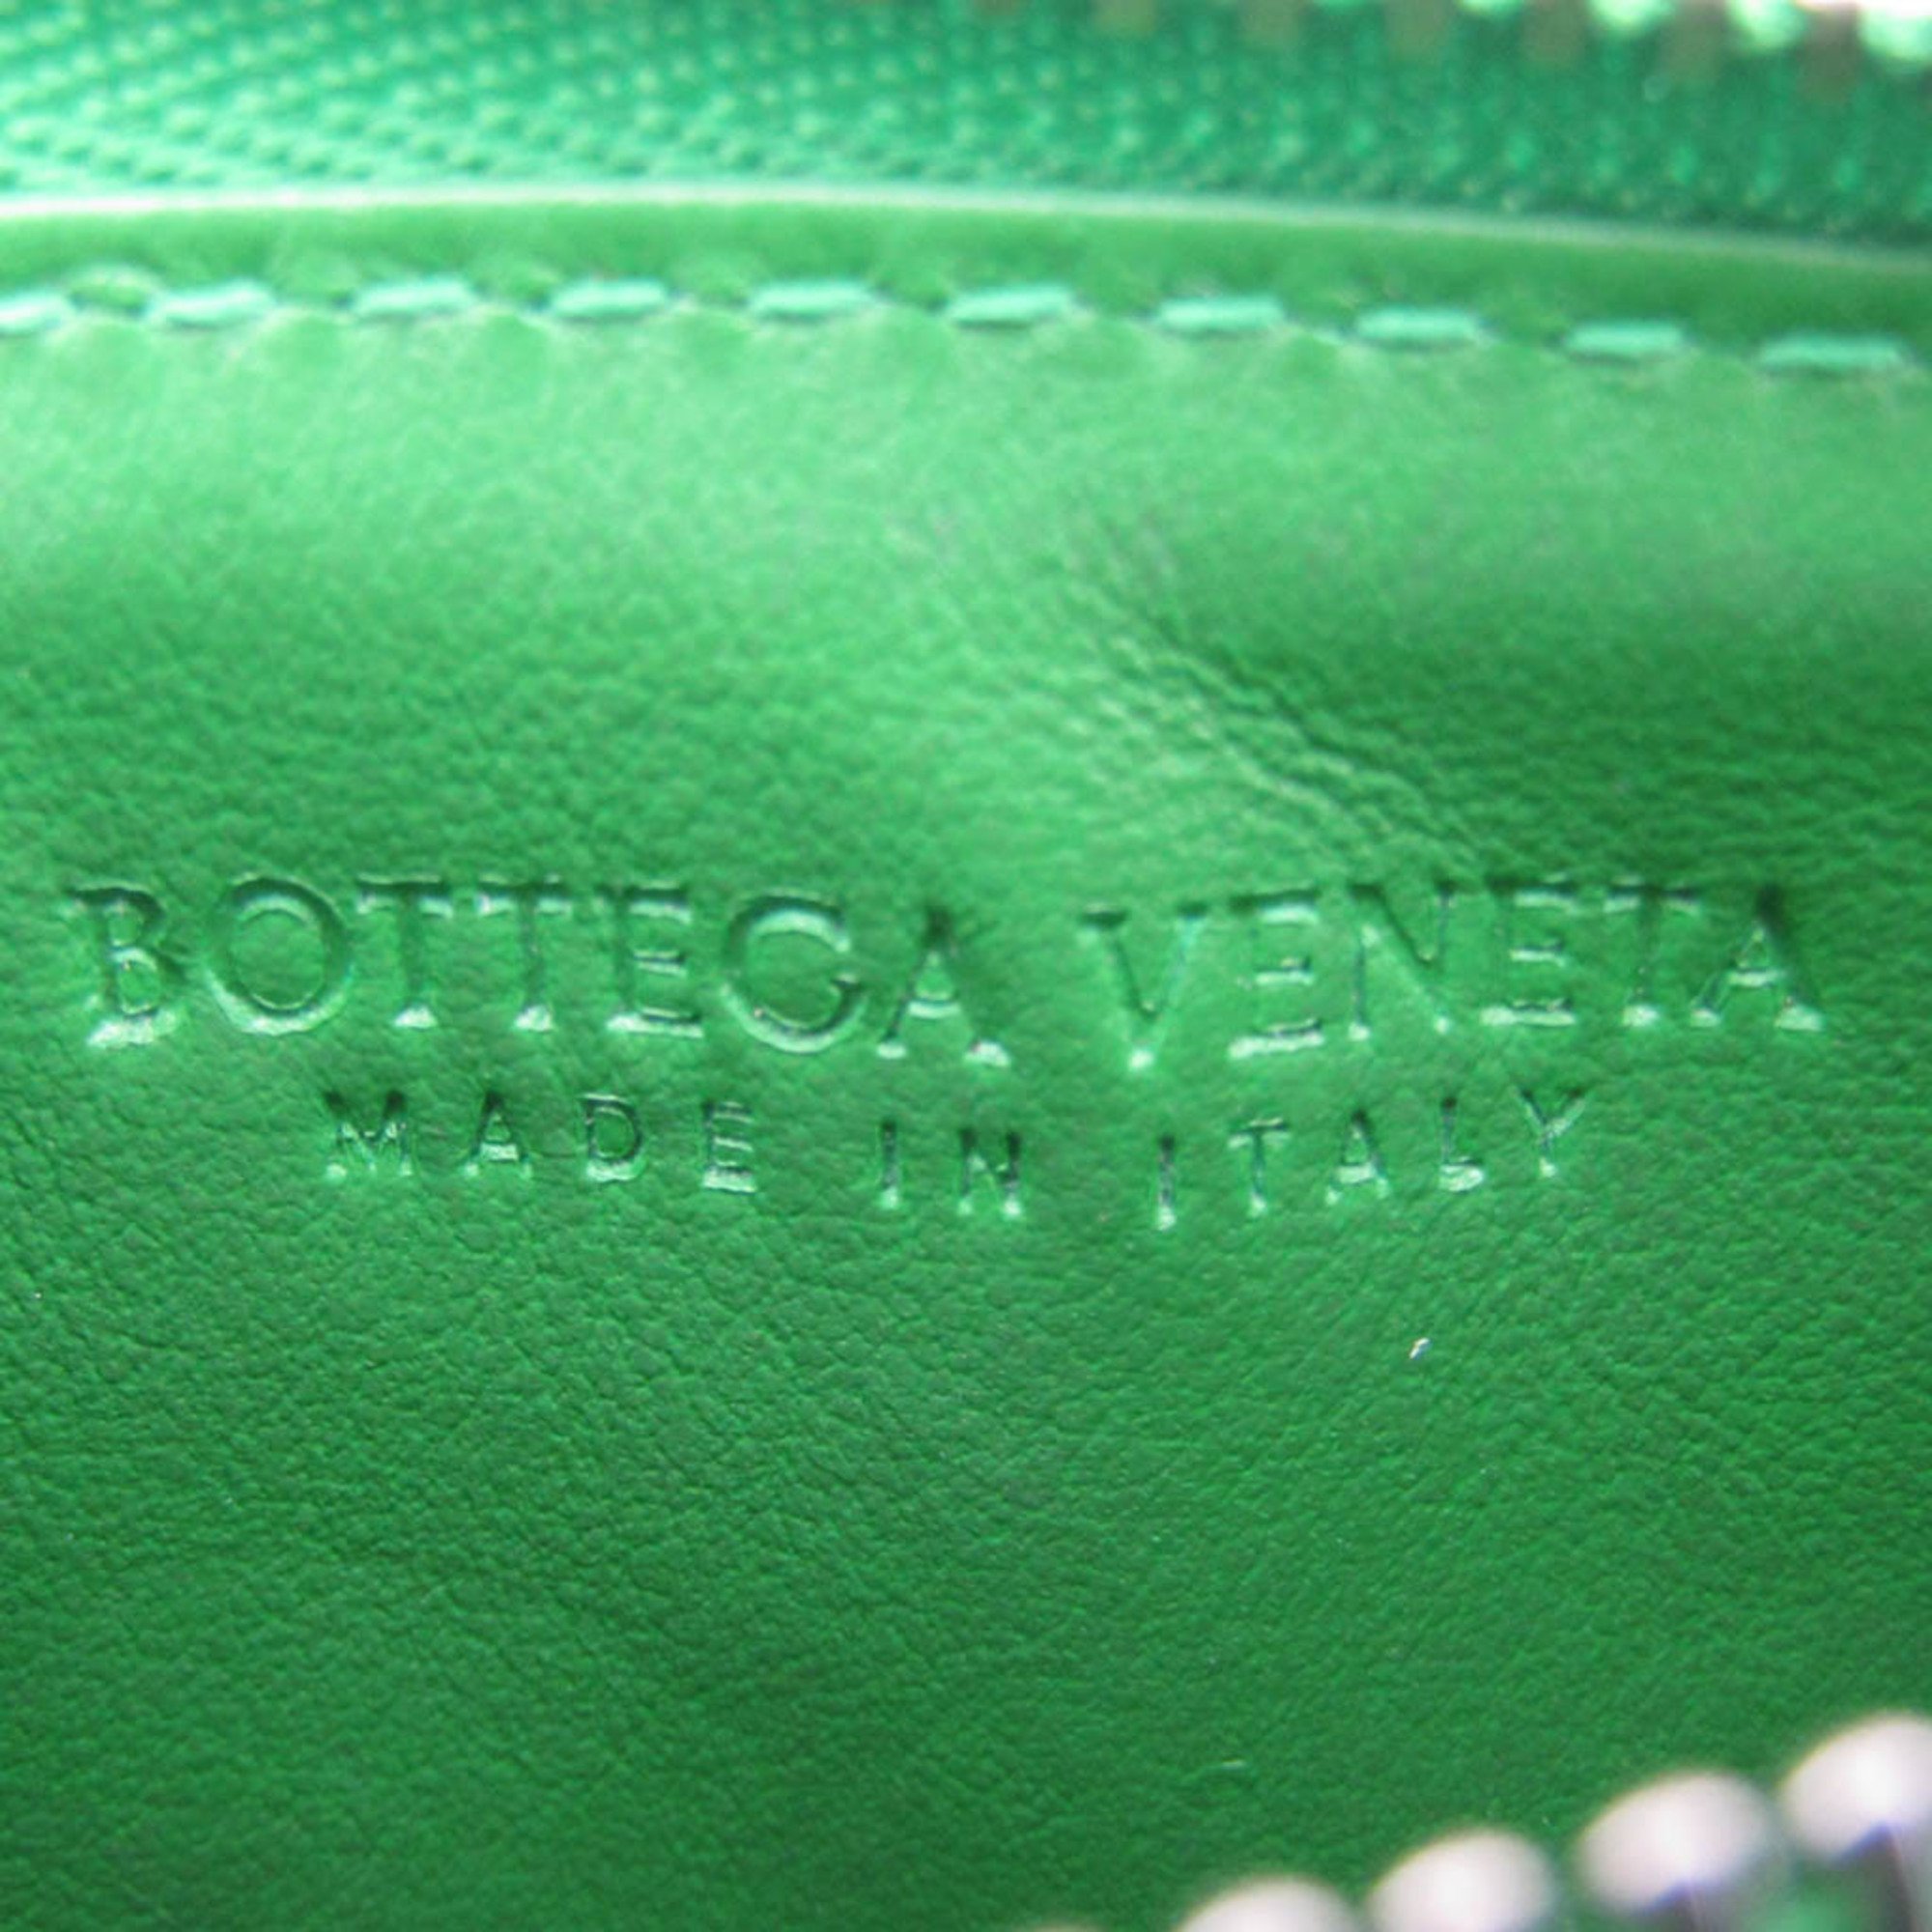 ボッテガ・ヴェネタ(Bottega Veneta) コインケース 657125 レザー カードケース グリーン